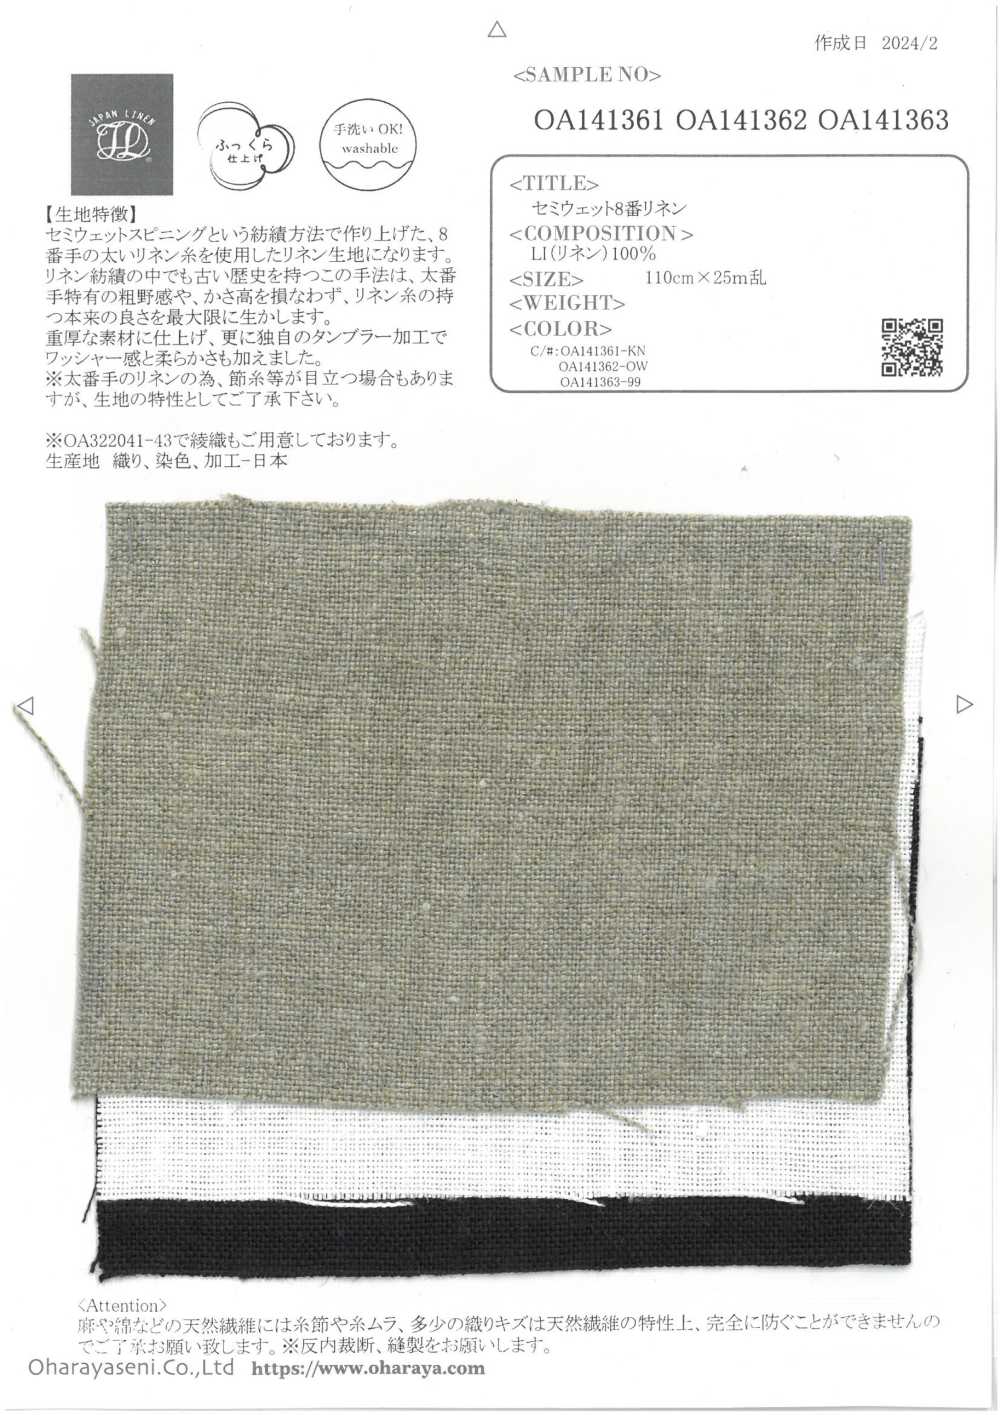 OA141362 Lin N°8 Semi-humide[Fabrication De Textile] Oharayaseni